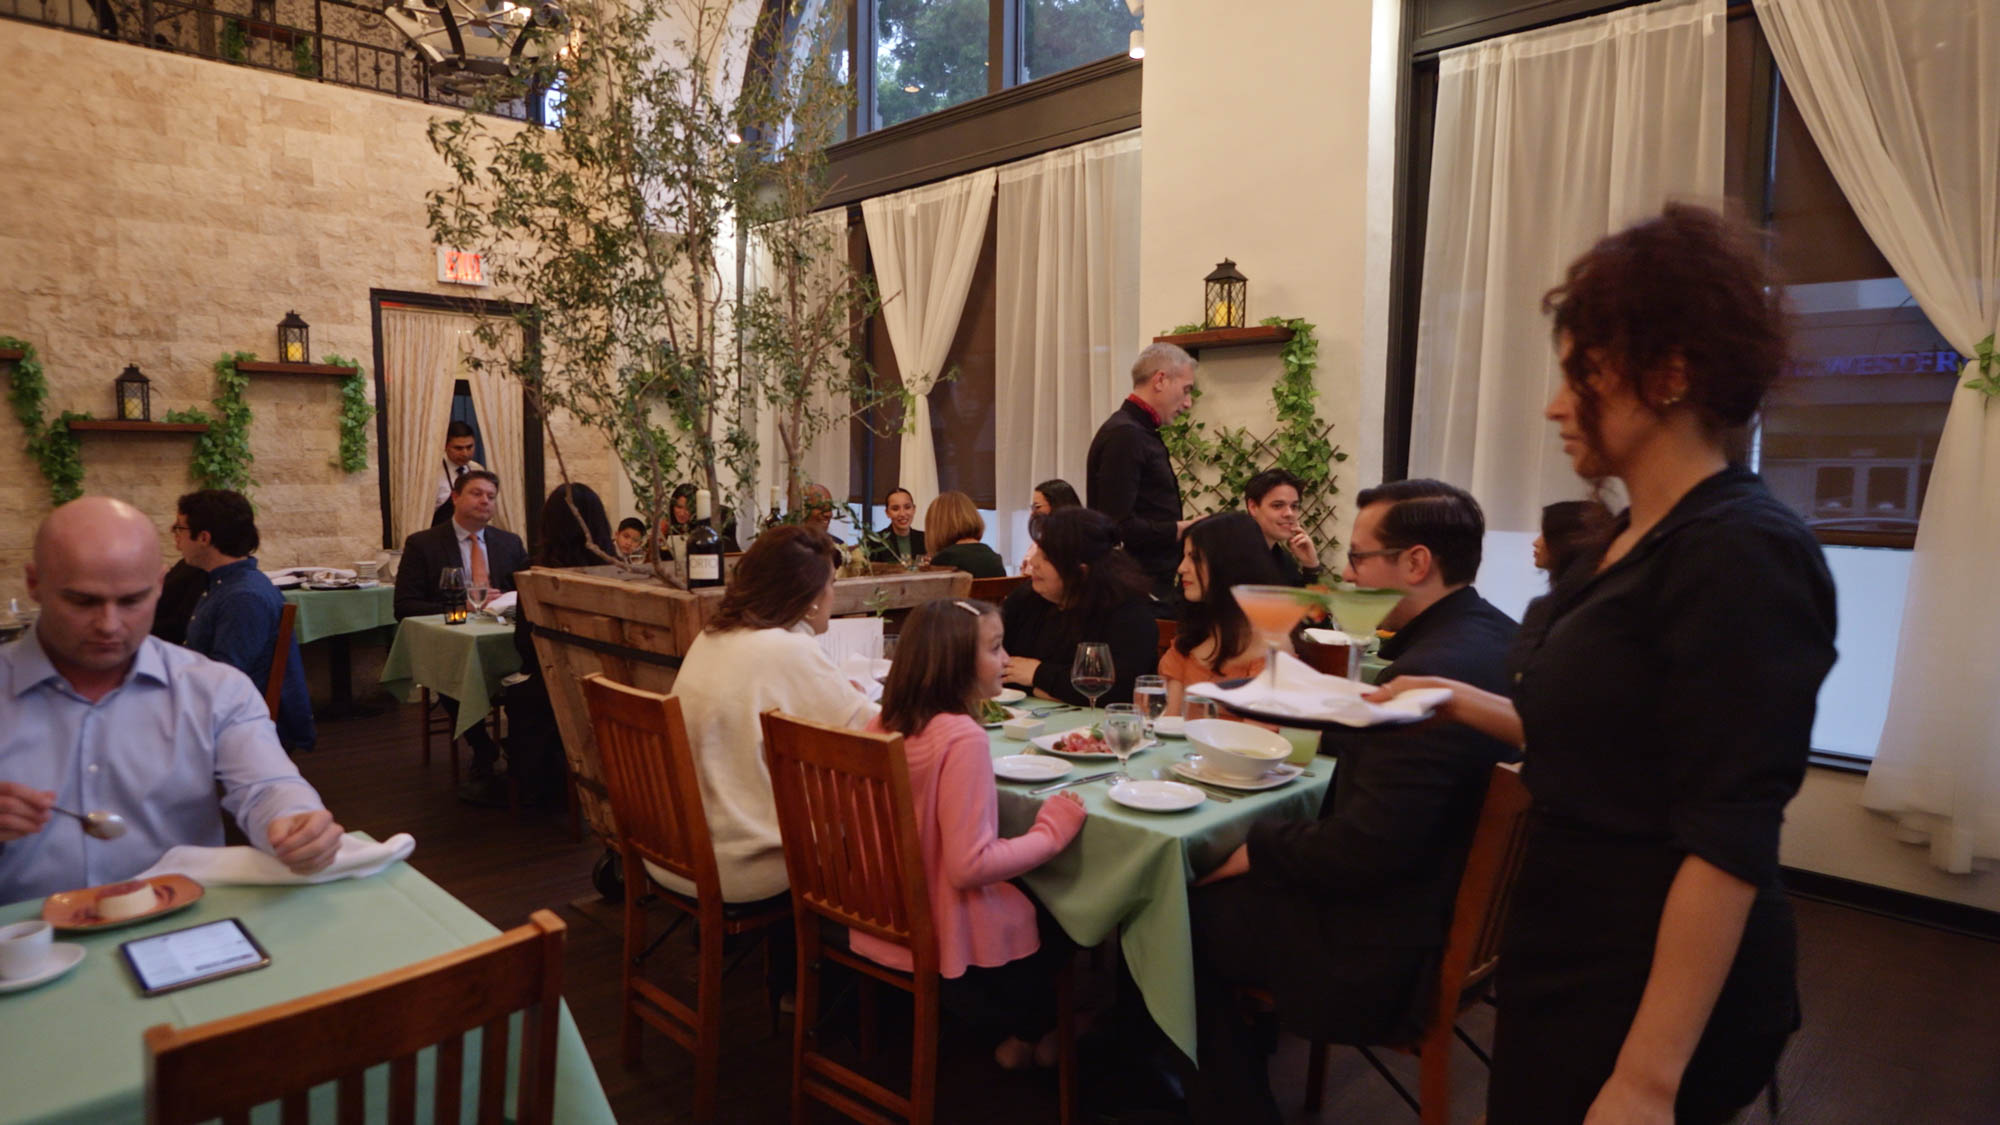 Family enjoying dinner inside restaurant